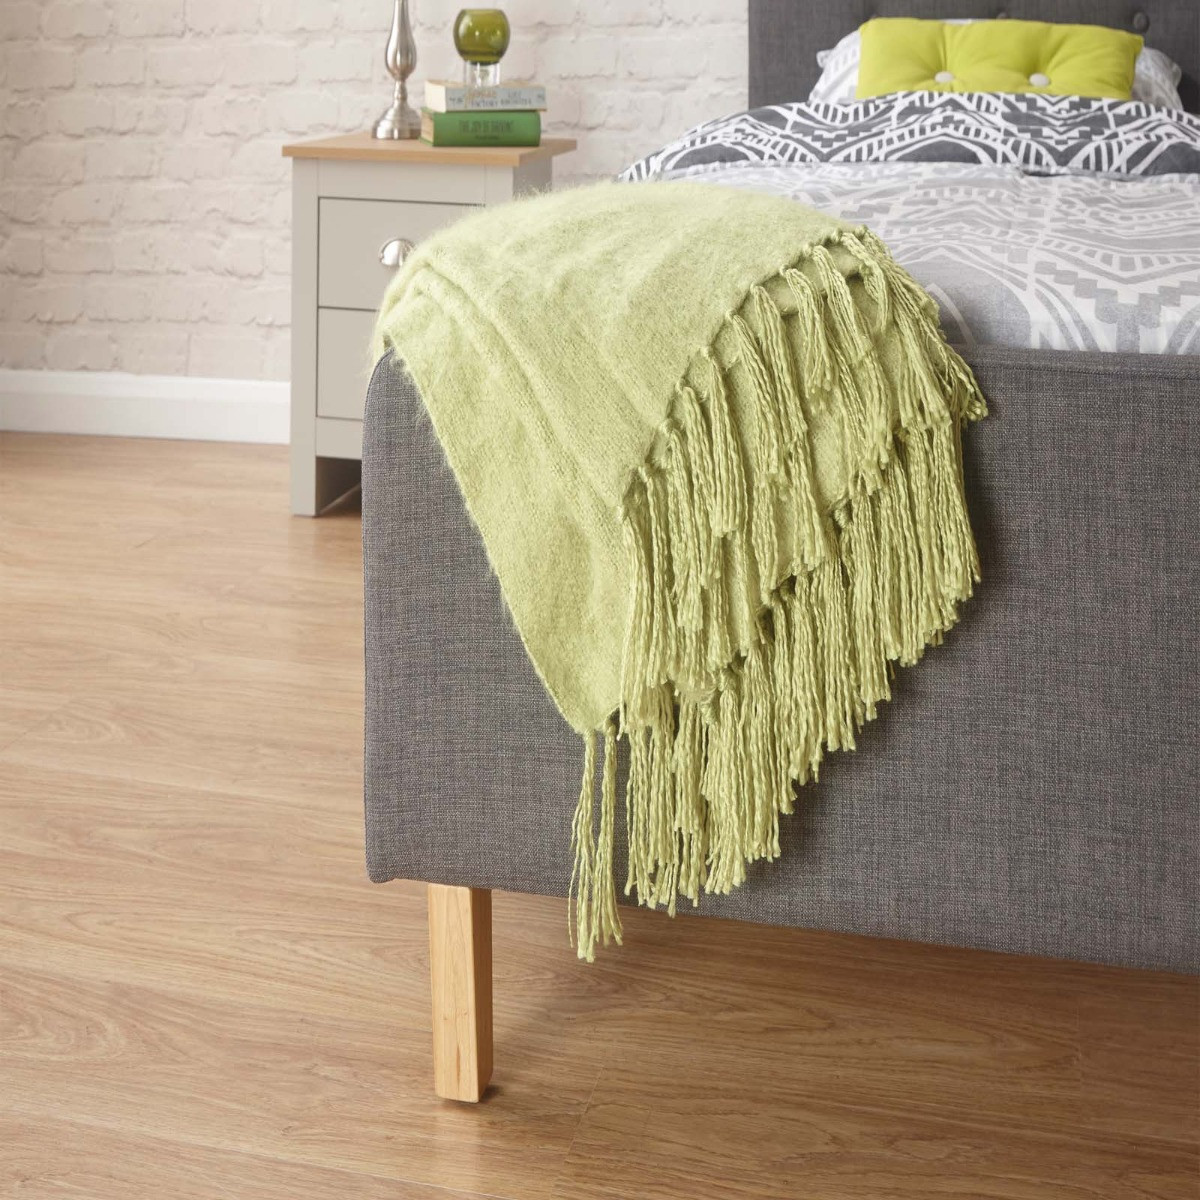 Ashbourne Upholstered Fabric Bed Frame - Grey>